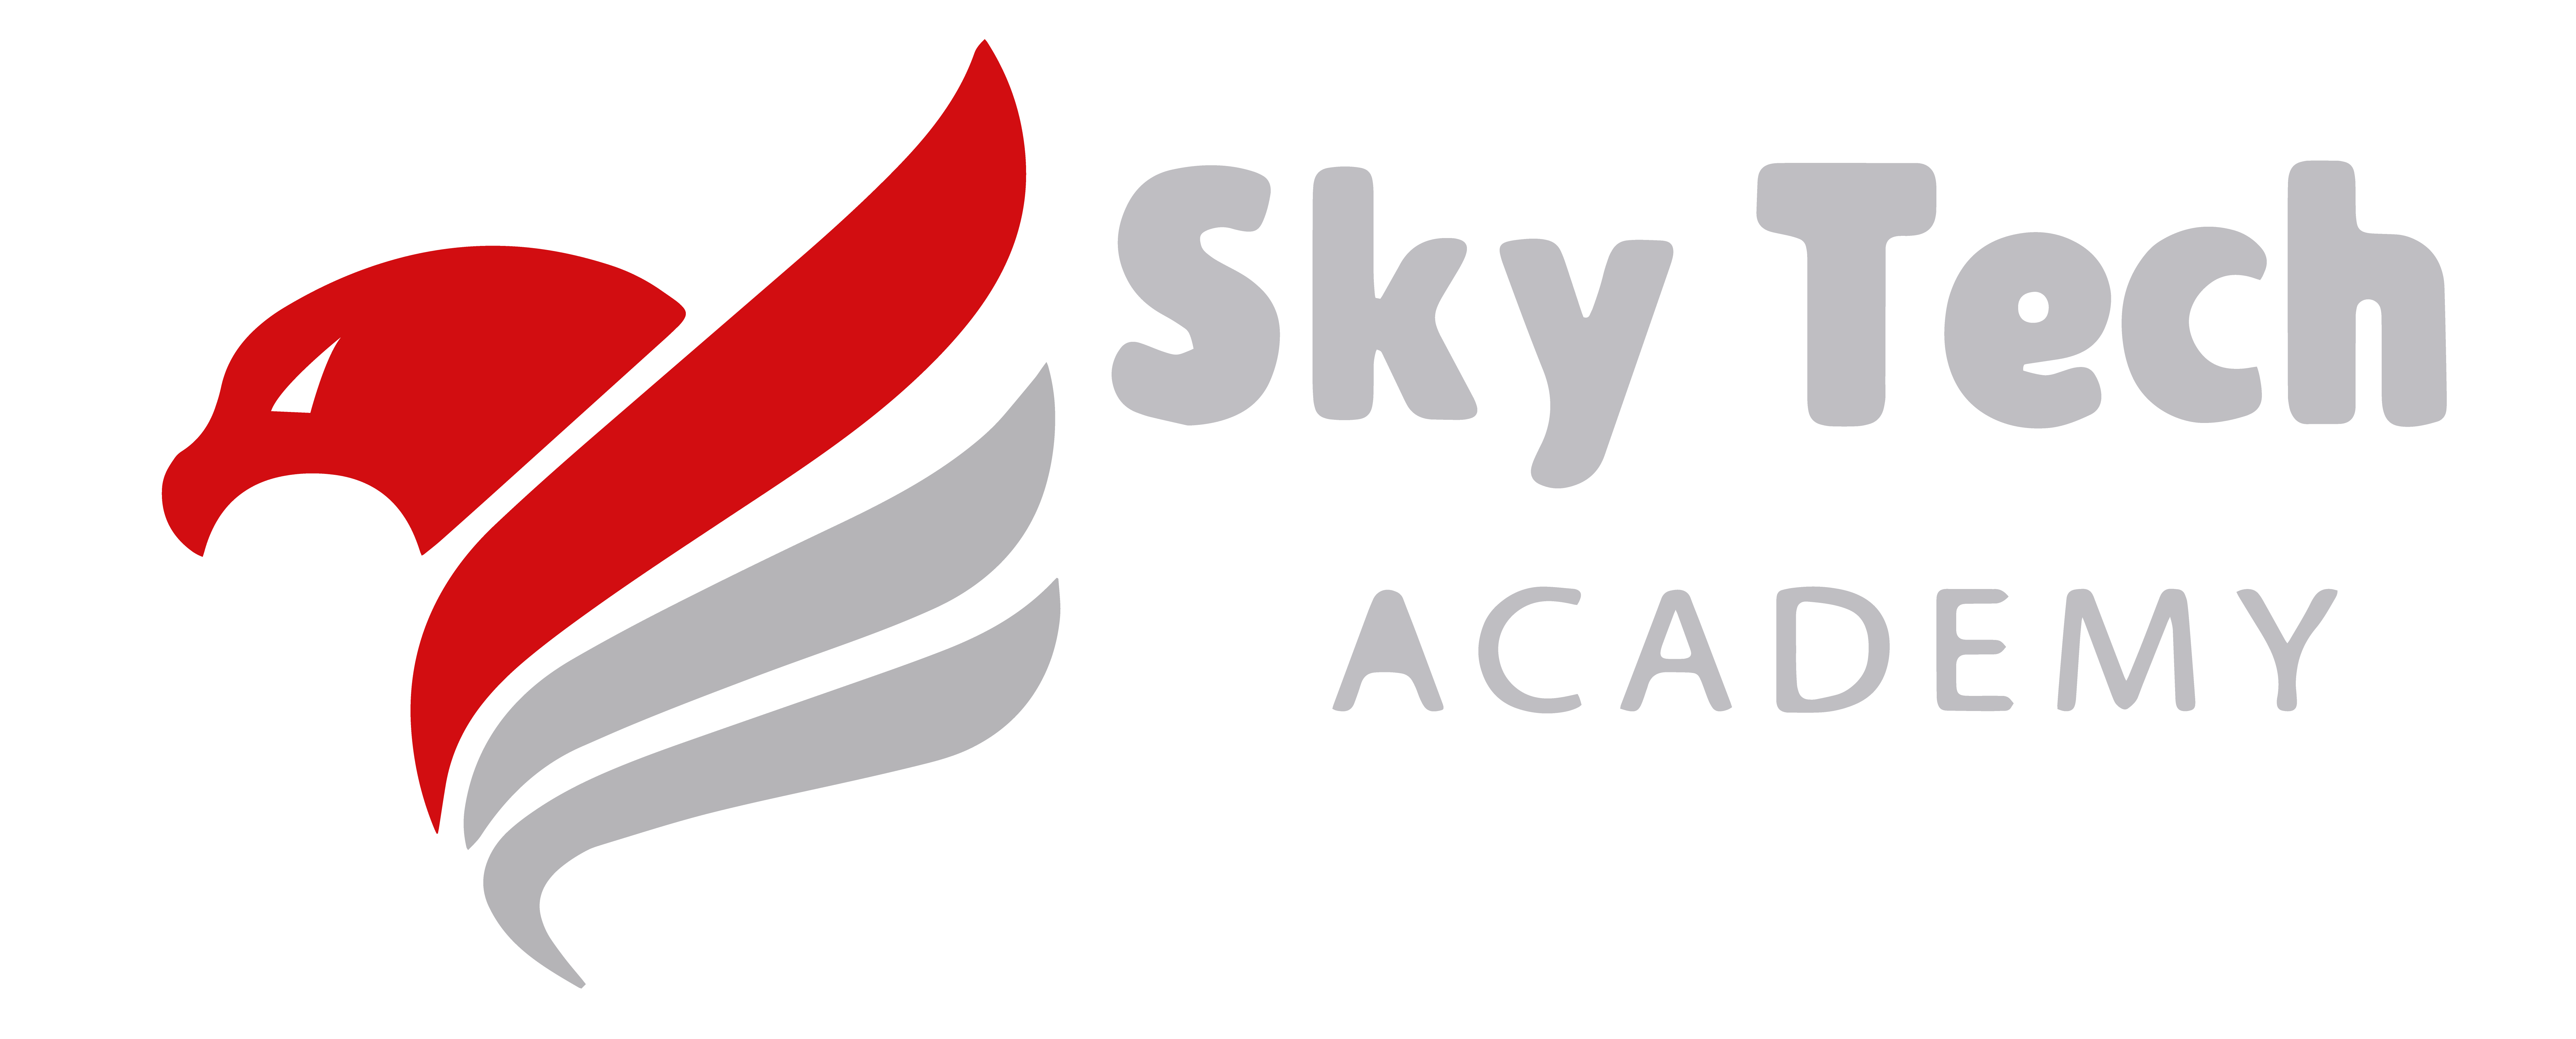 Sky Tech Academy 